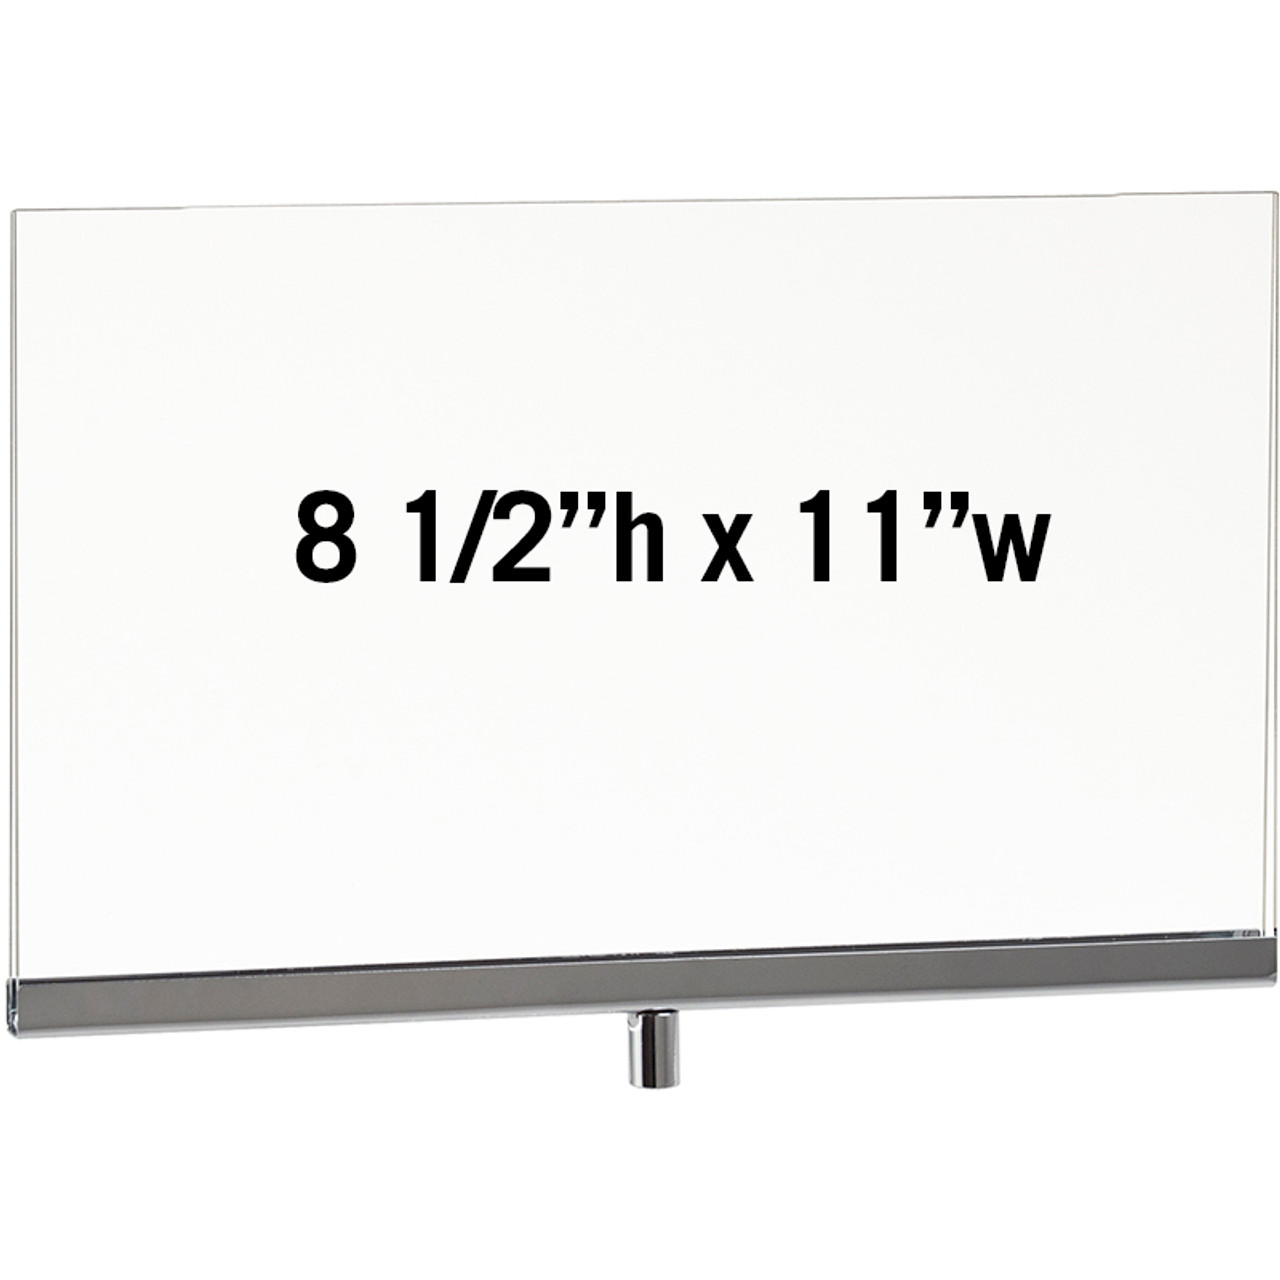 PJ/811 Acrylic & Chrome 8-1/2" x 11" Sign Holder